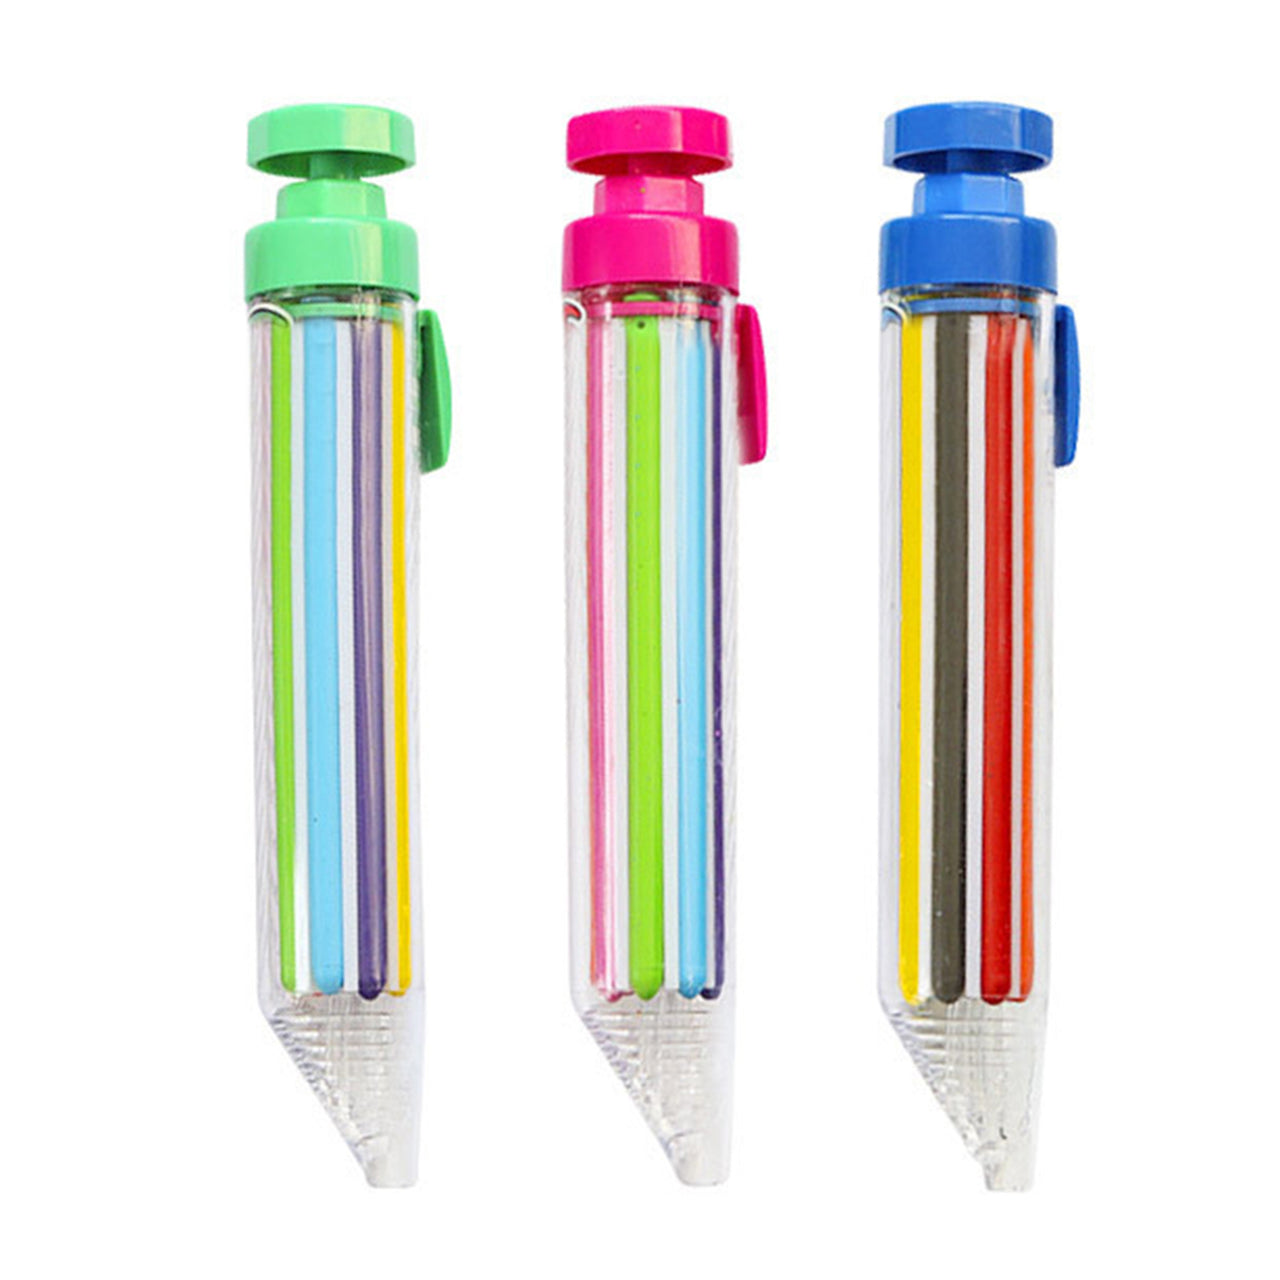 Push Crayon Pen™ - Det ultimative tegneværktøj til børn - Farvepen